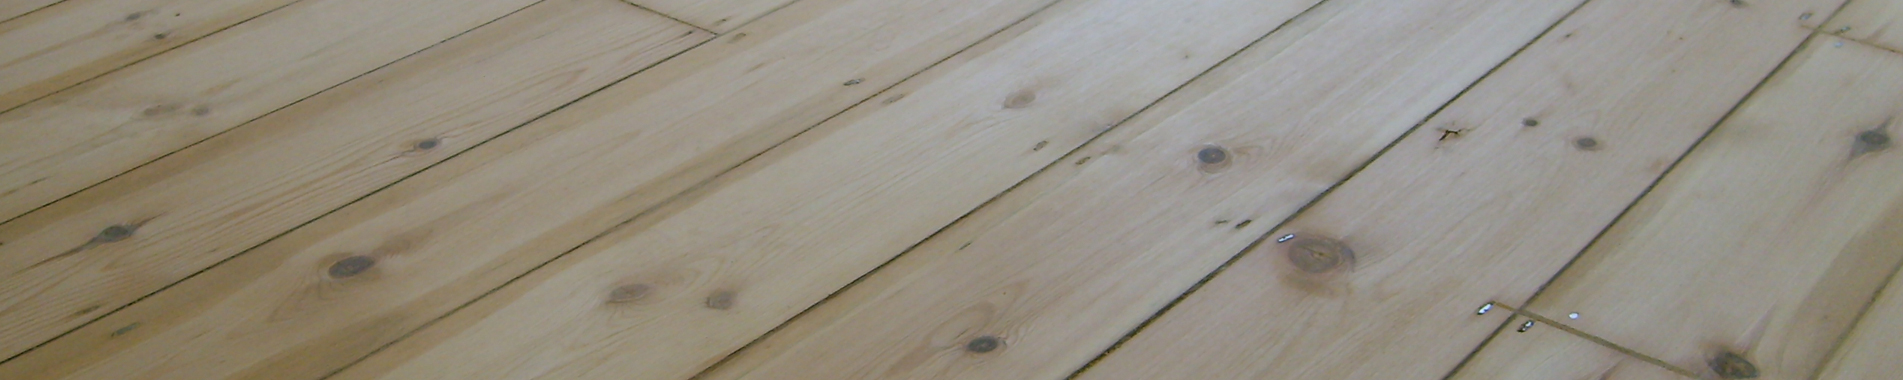 Richmond Floor Sanding Company Floor Sanding Kent